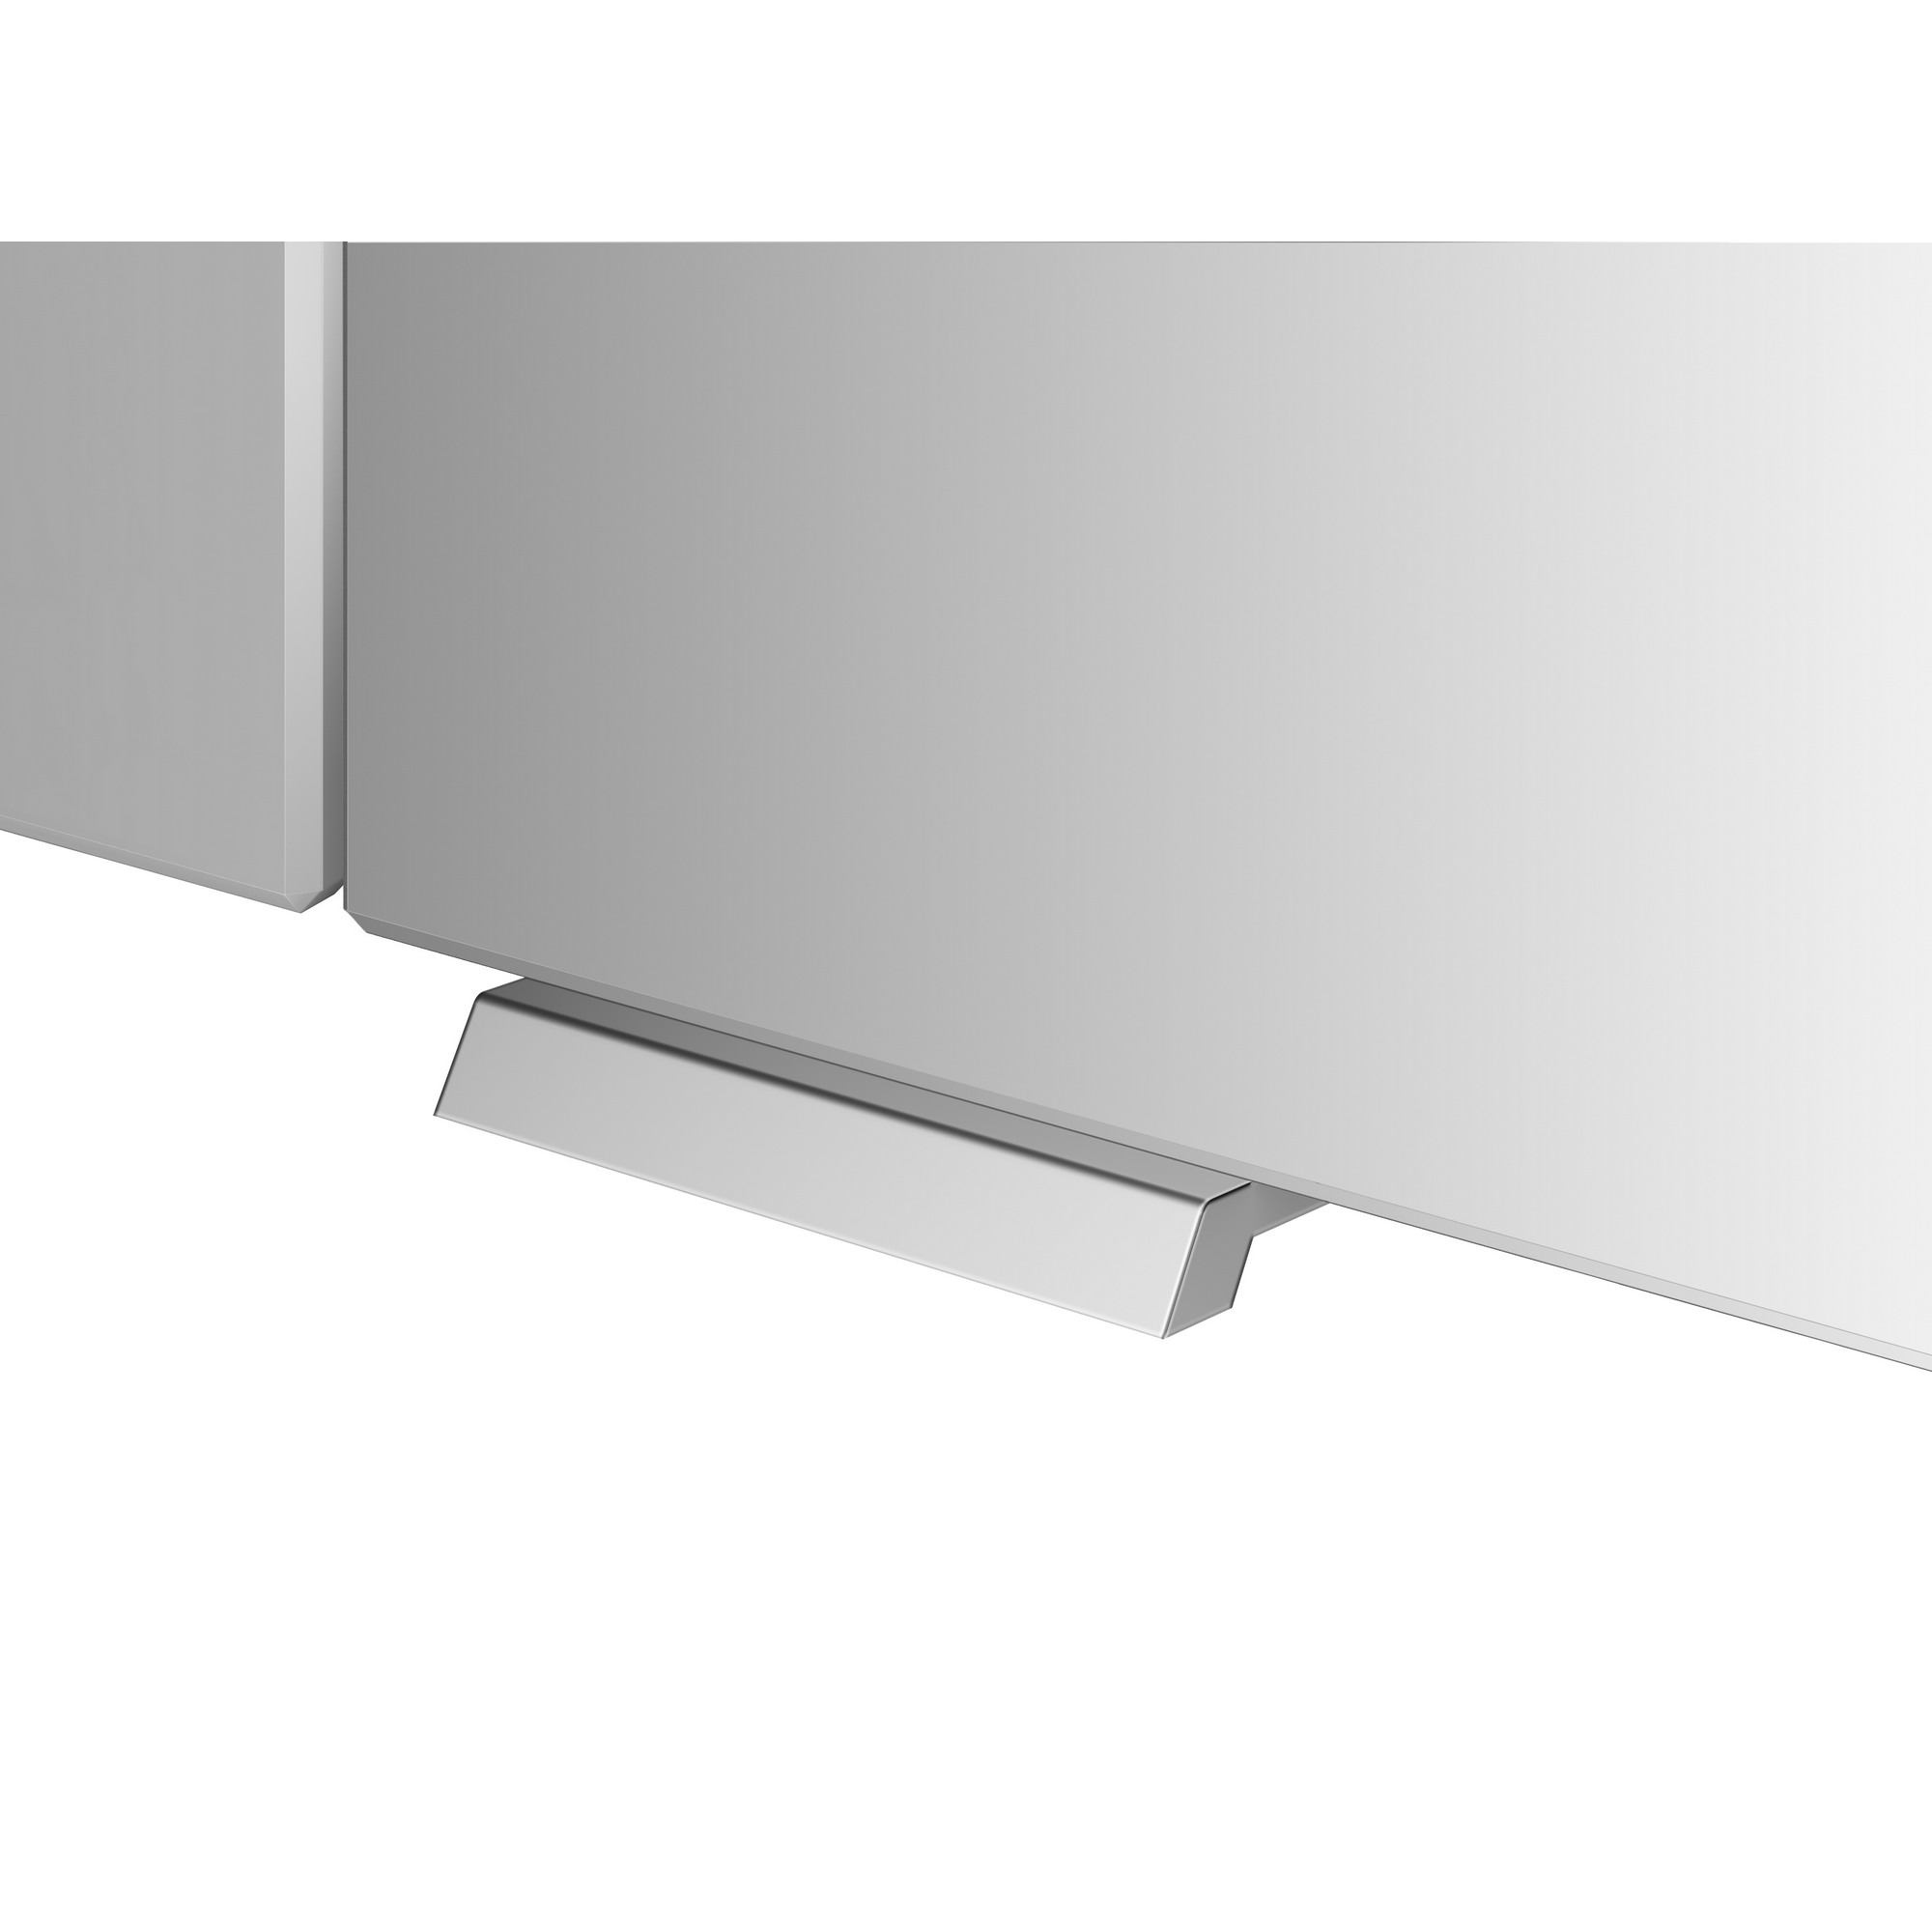 LED-Spiegelschrank 'KHX' anthrazit 60,4 x 74 x 14,2 cm + product picture